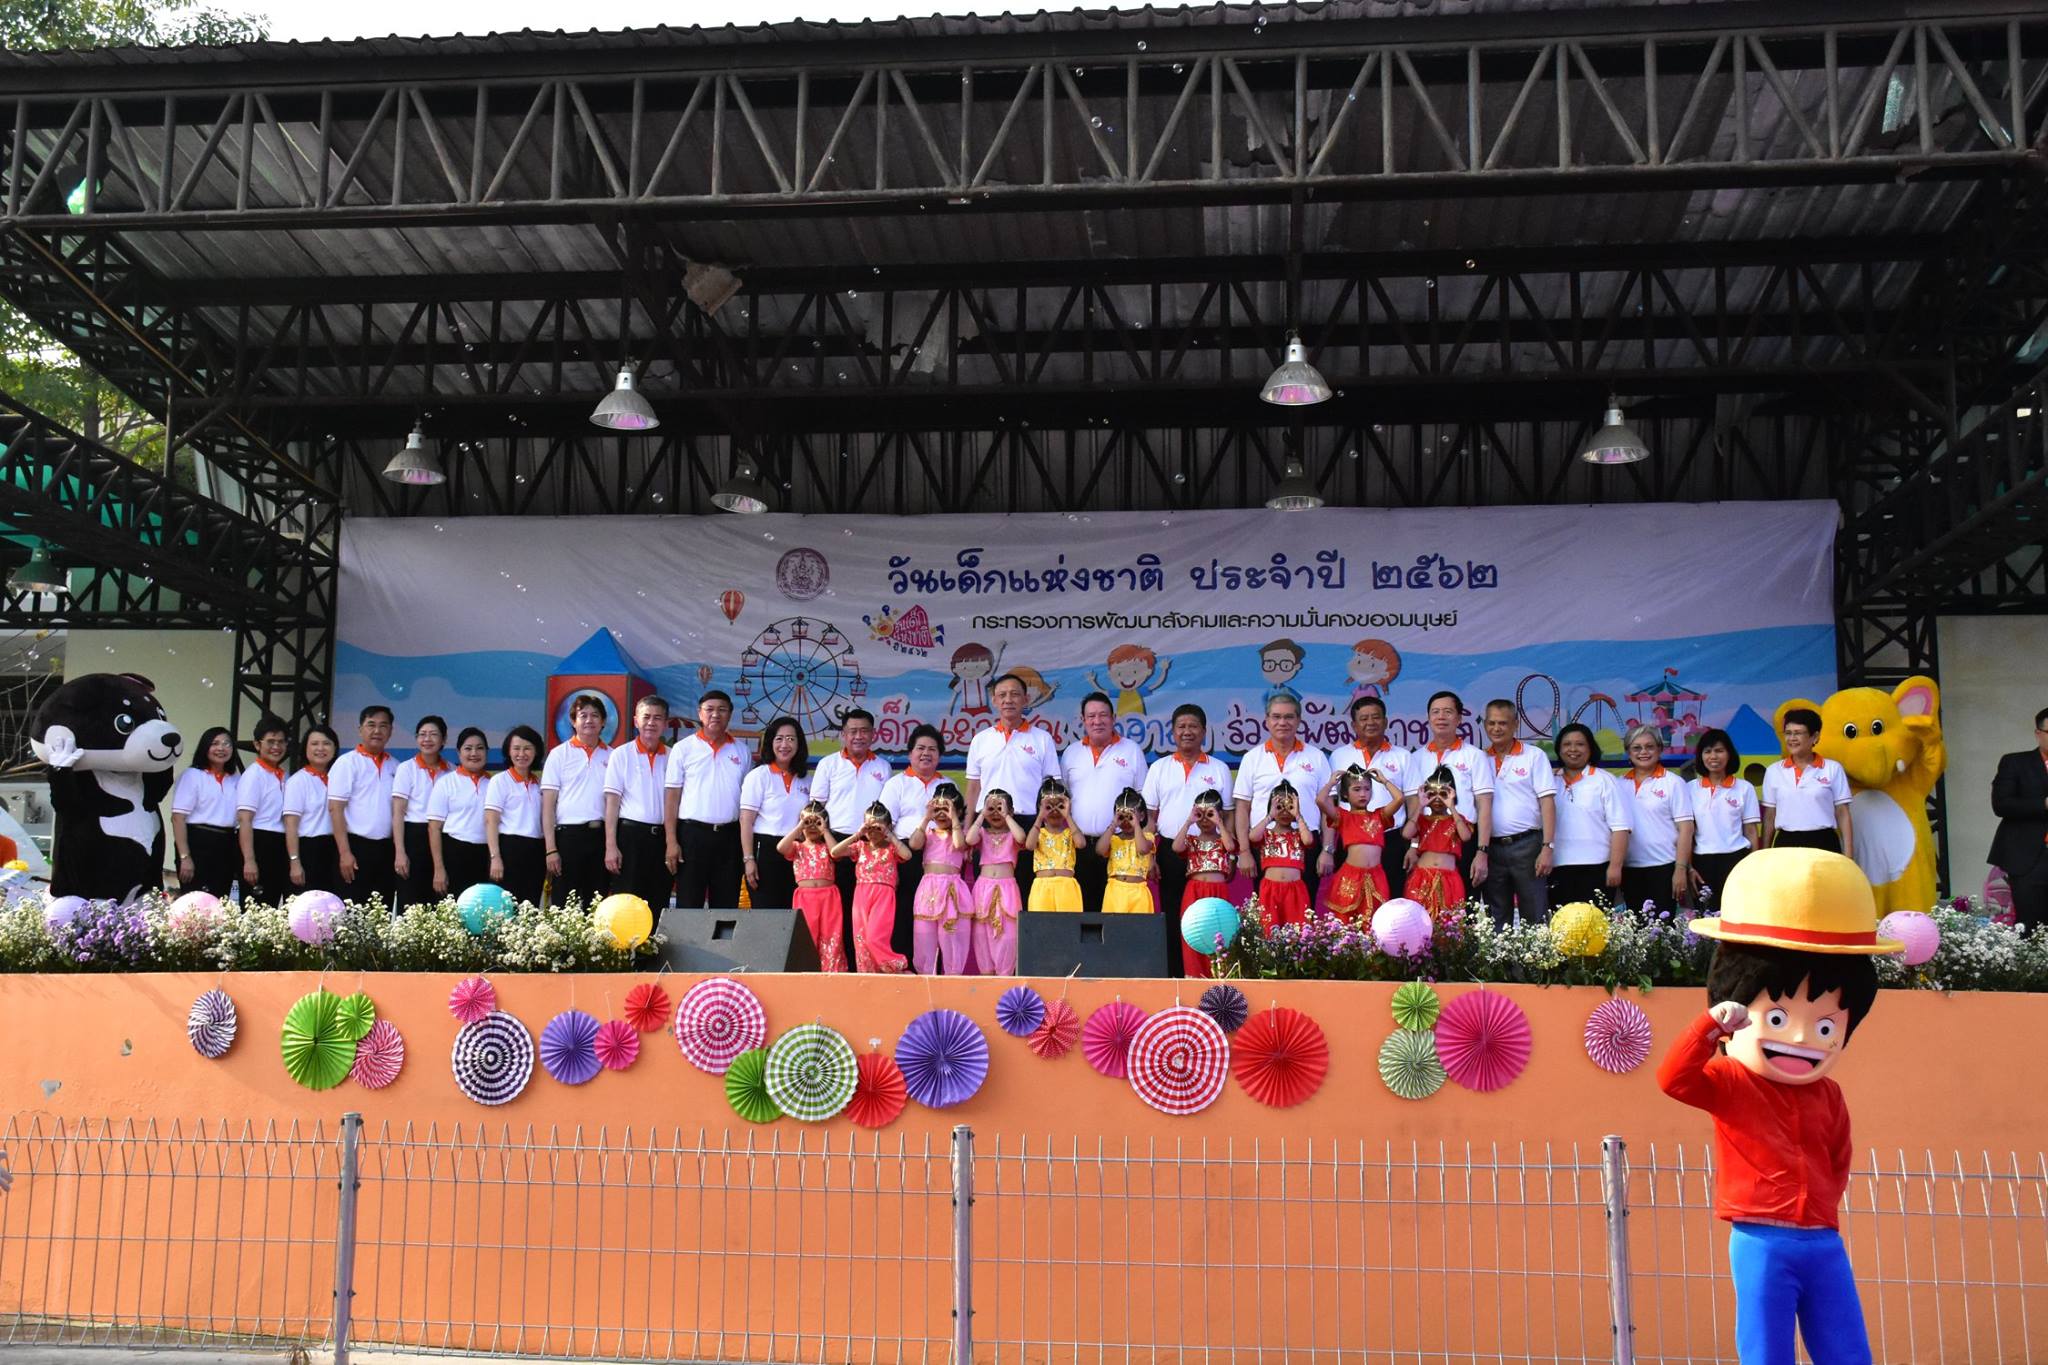 งานวันเด็กแห่งชาติ 2562 “เด็กไทยรู้คิด มีจิตอาสา ร่วมพัฒนาชาติ”